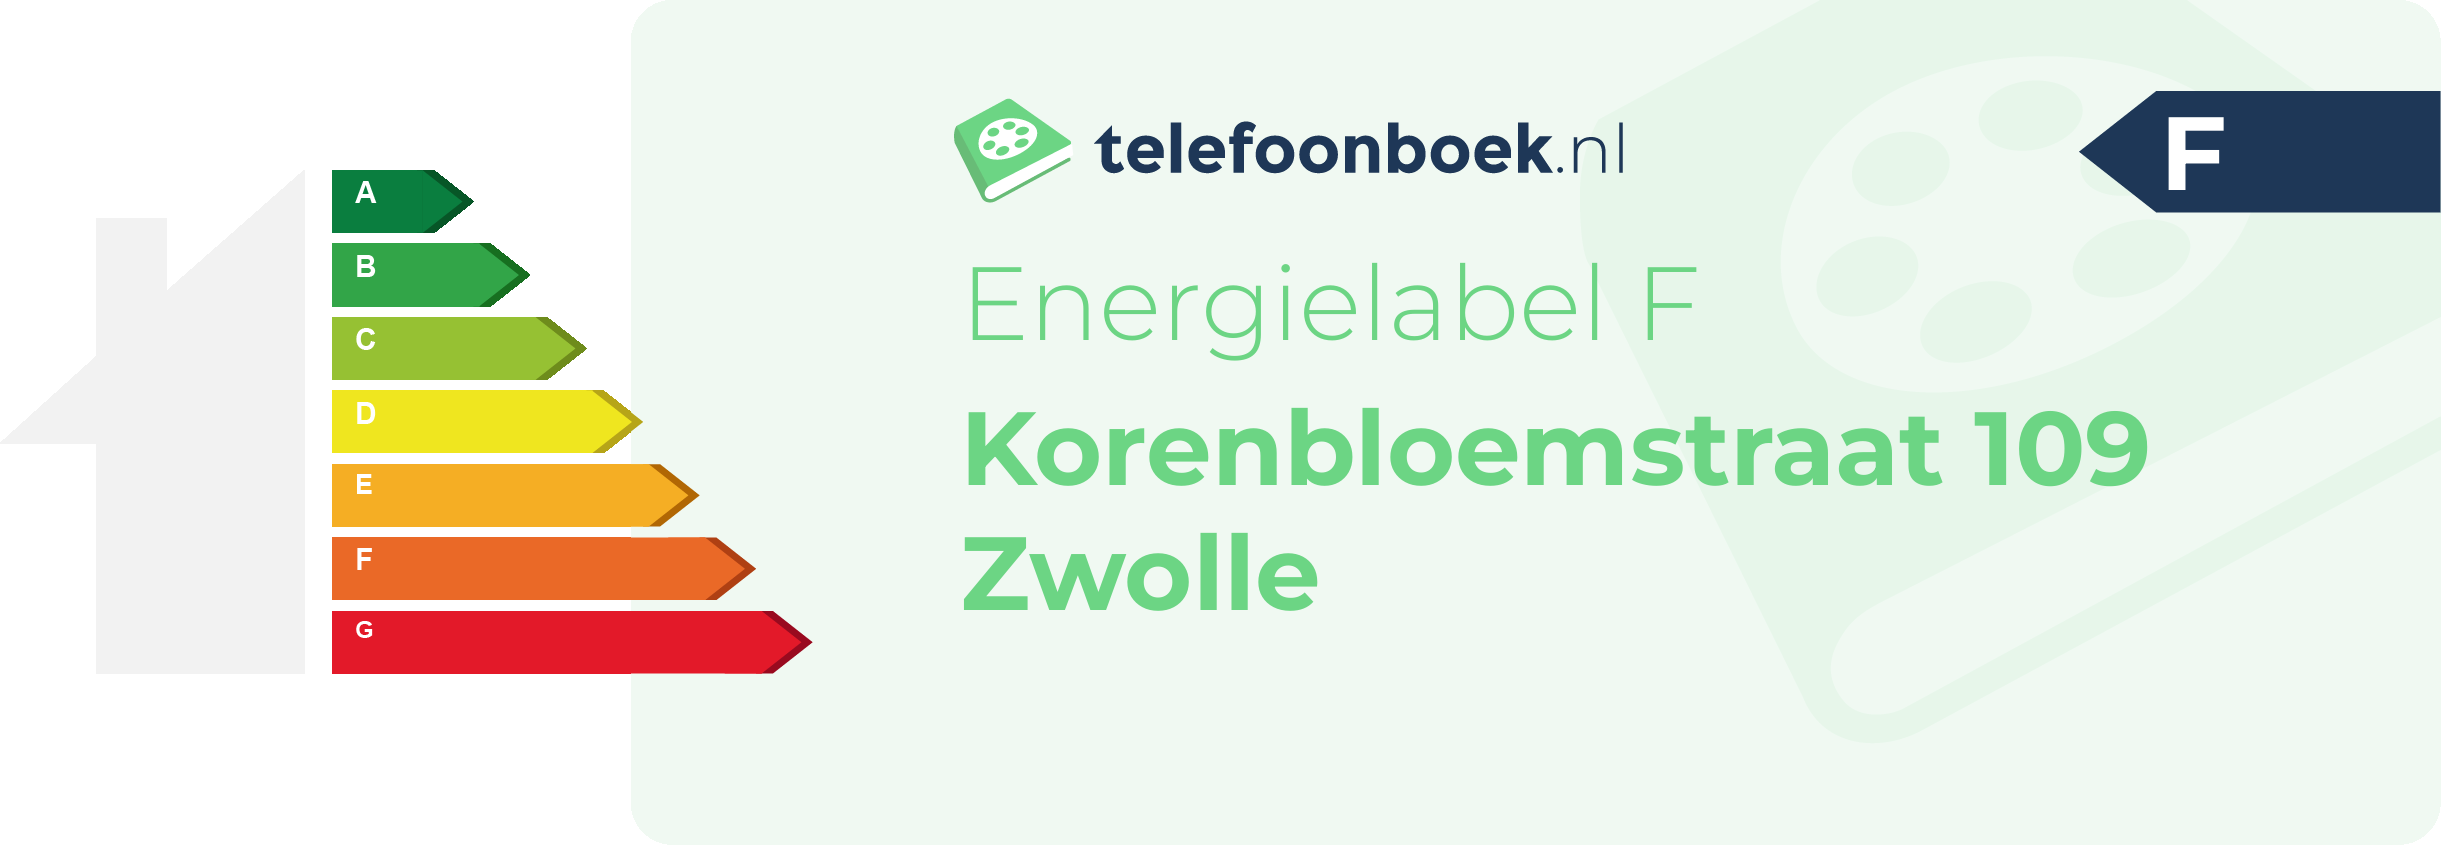 Energielabel Korenbloemstraat 109 Zwolle